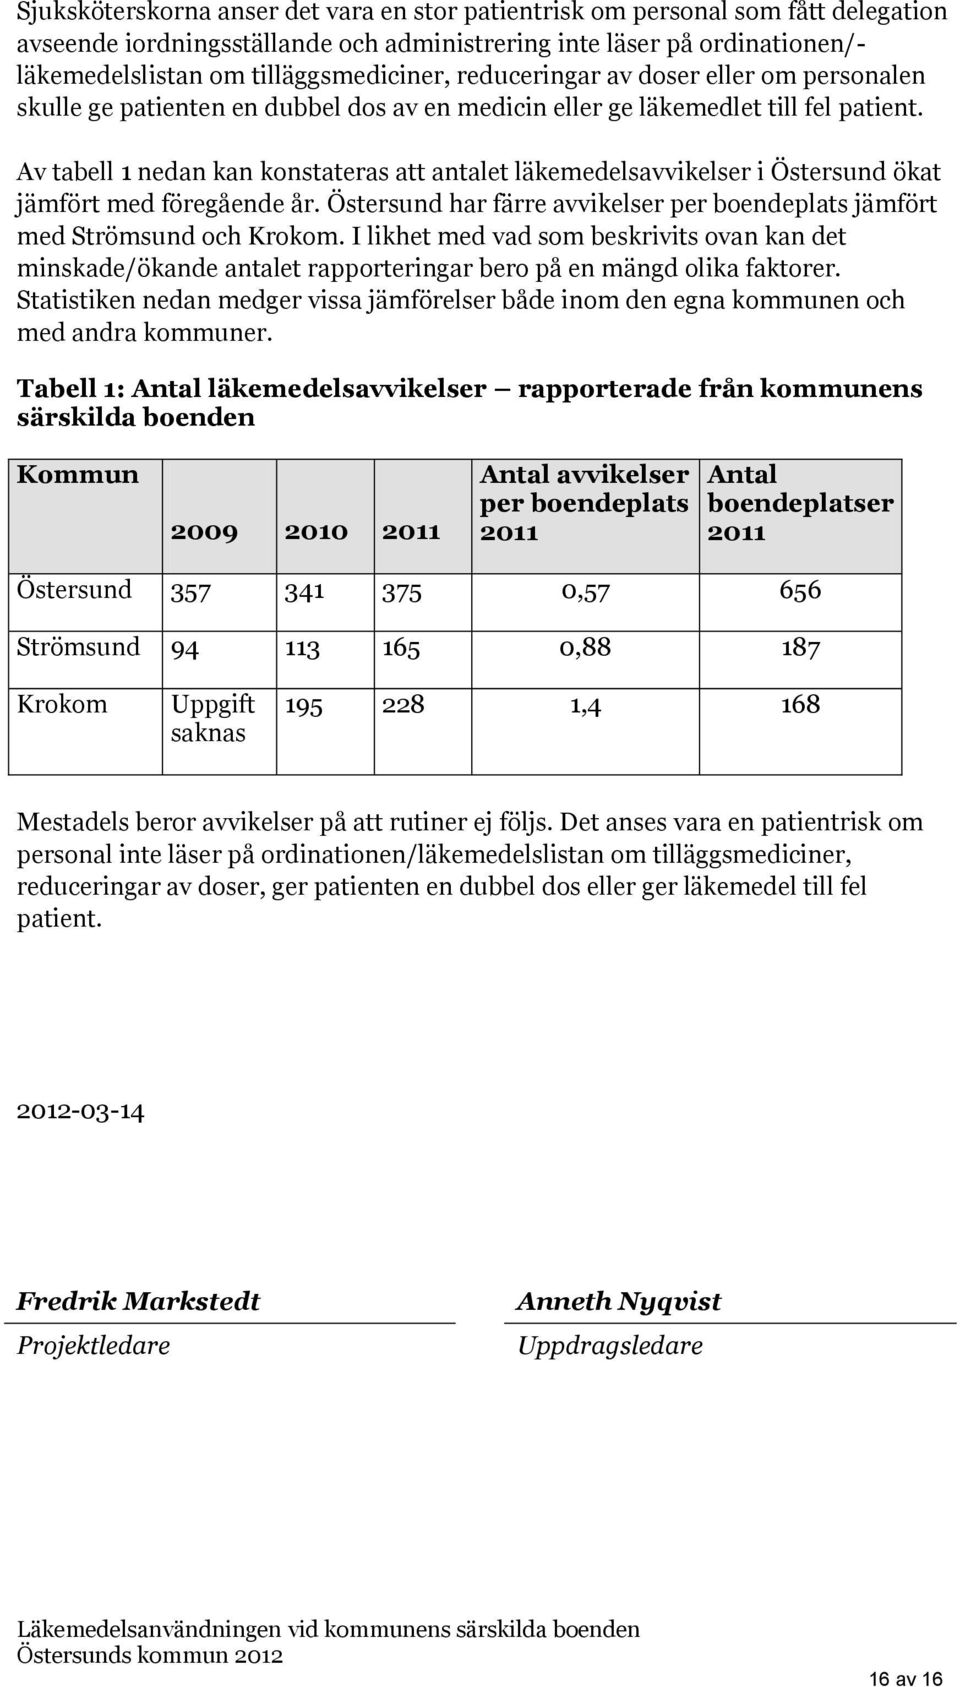 Av tabell 1 nedan kan konstateras att antalet läkemedelsavvikelser i Östersund ökat jämfört med föregående år. Östersund har färre avvikelser per boendeplats jämfört med Strömsund och Krokom.